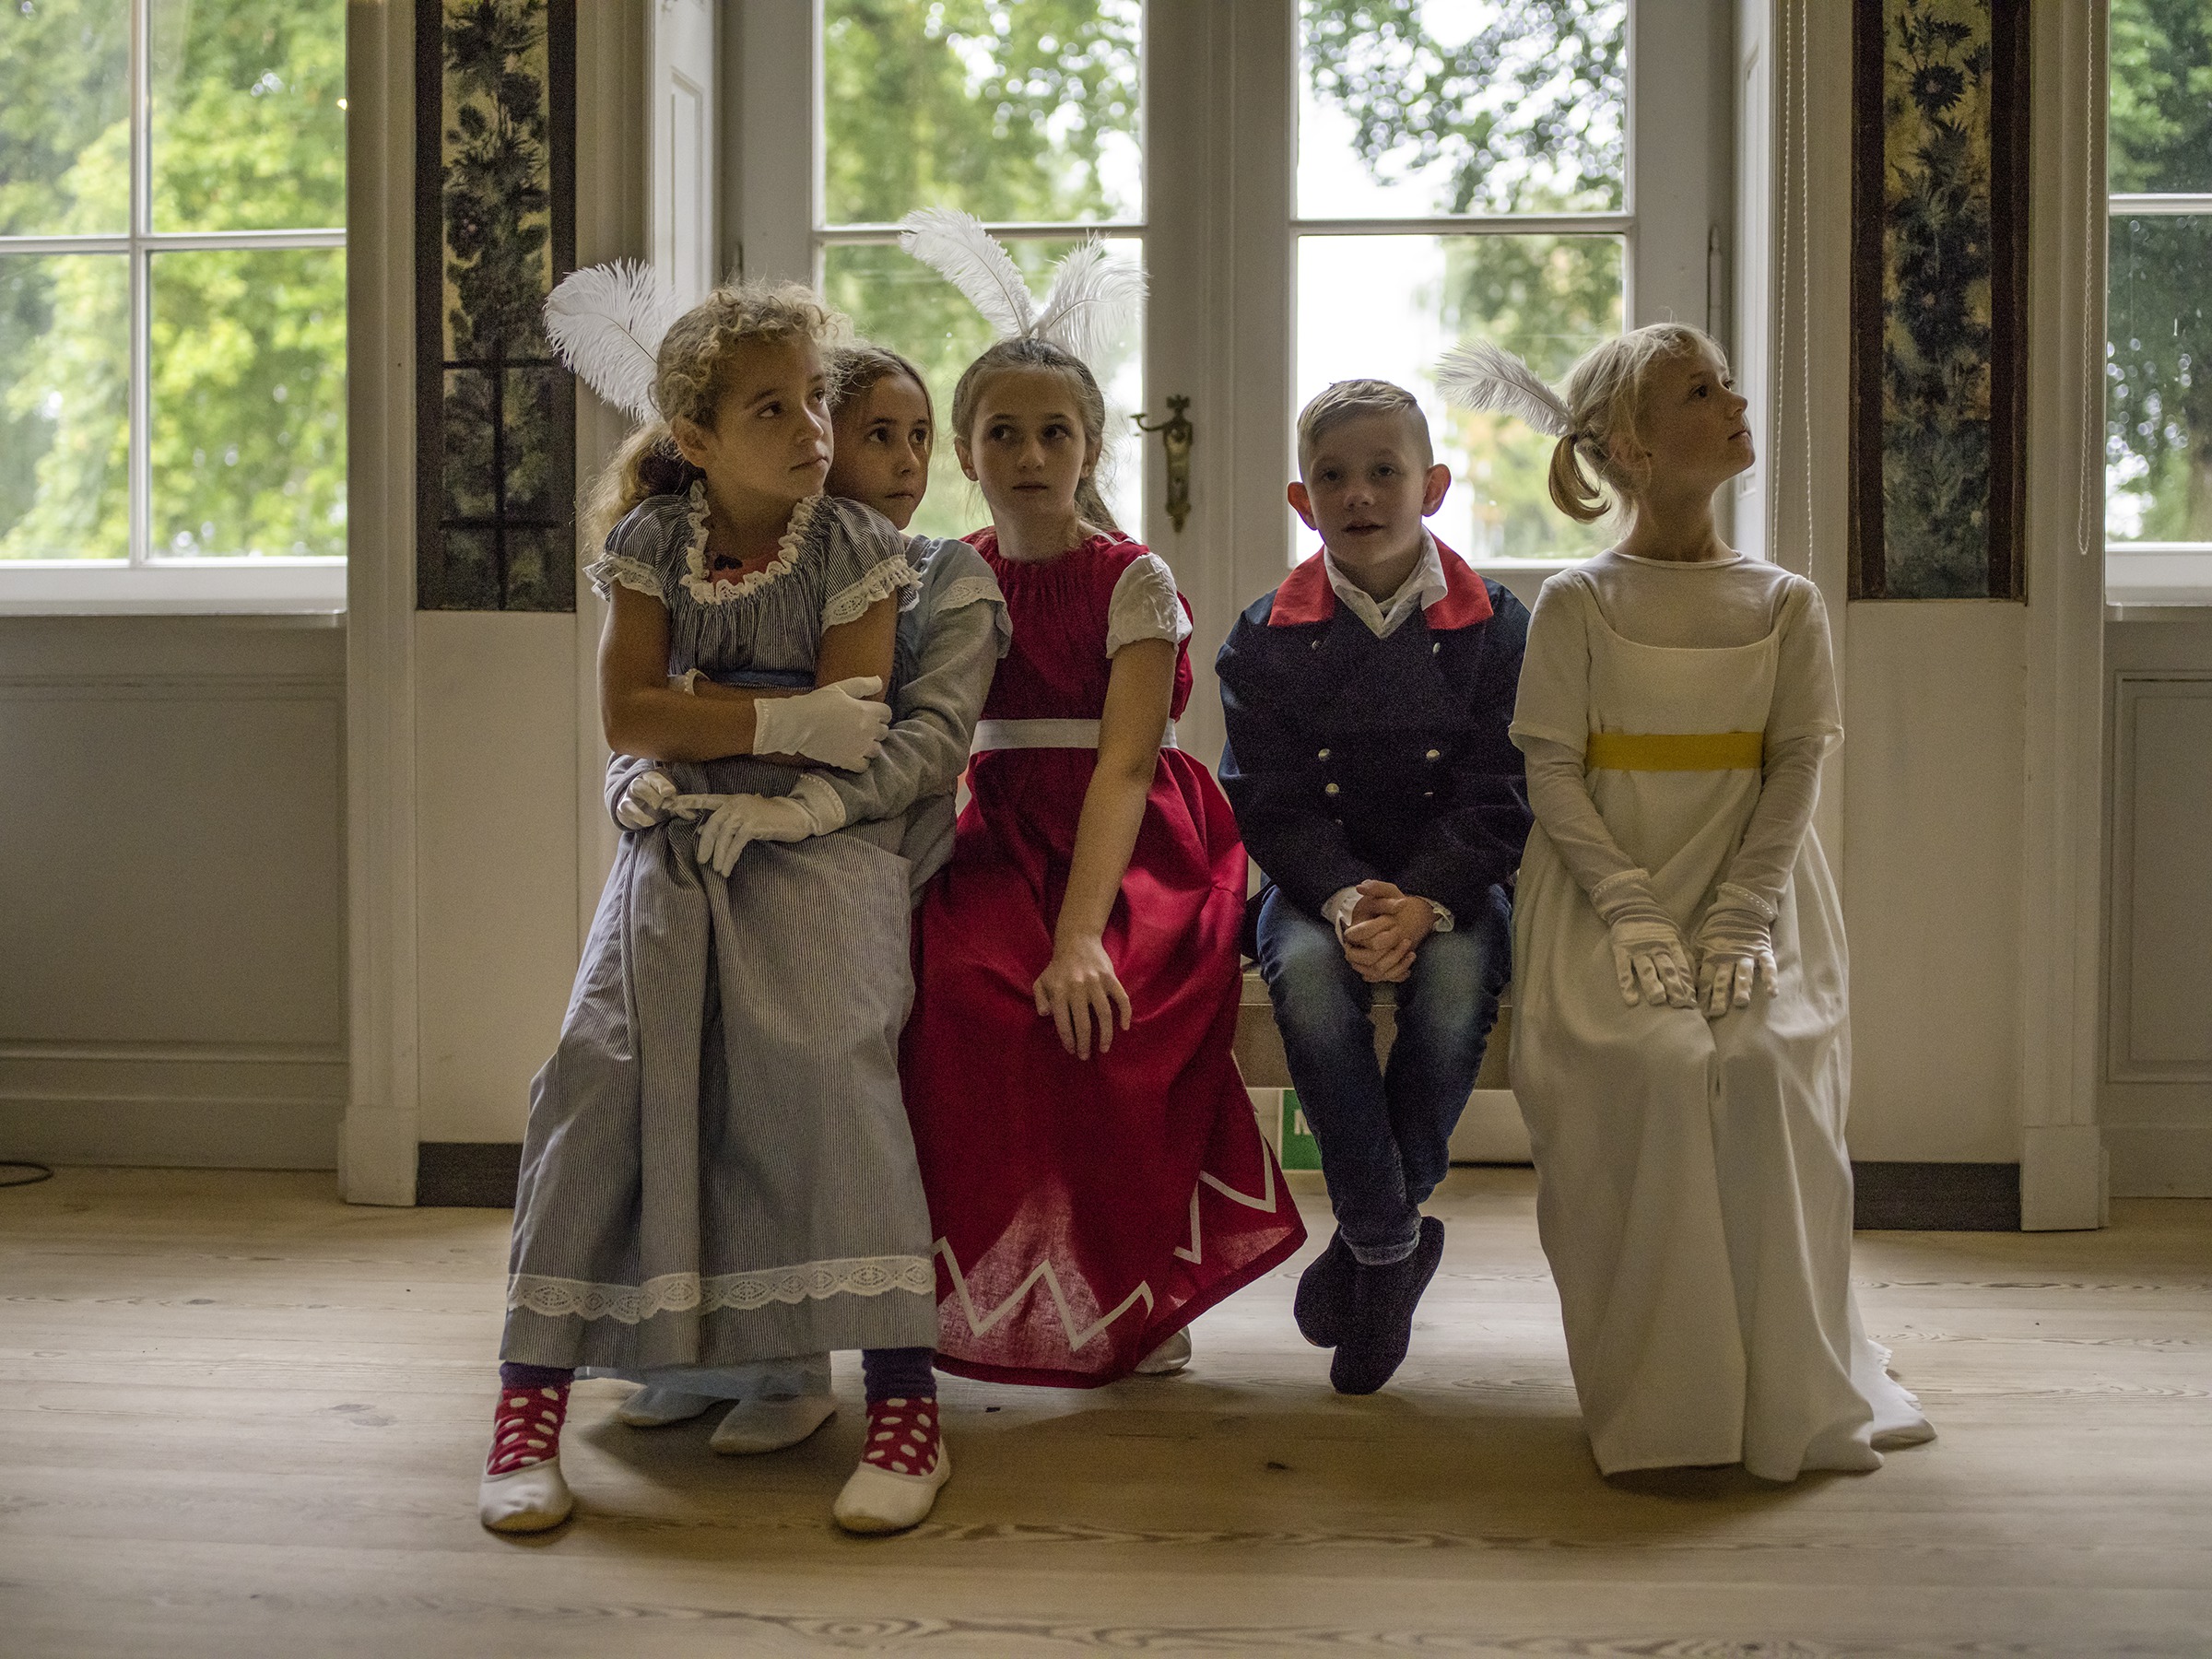 Kinderführung im Schloss Paretz, Vier königlich verkleidete Kinder sitzen aufeiner Bank im Gartensaal©  / 